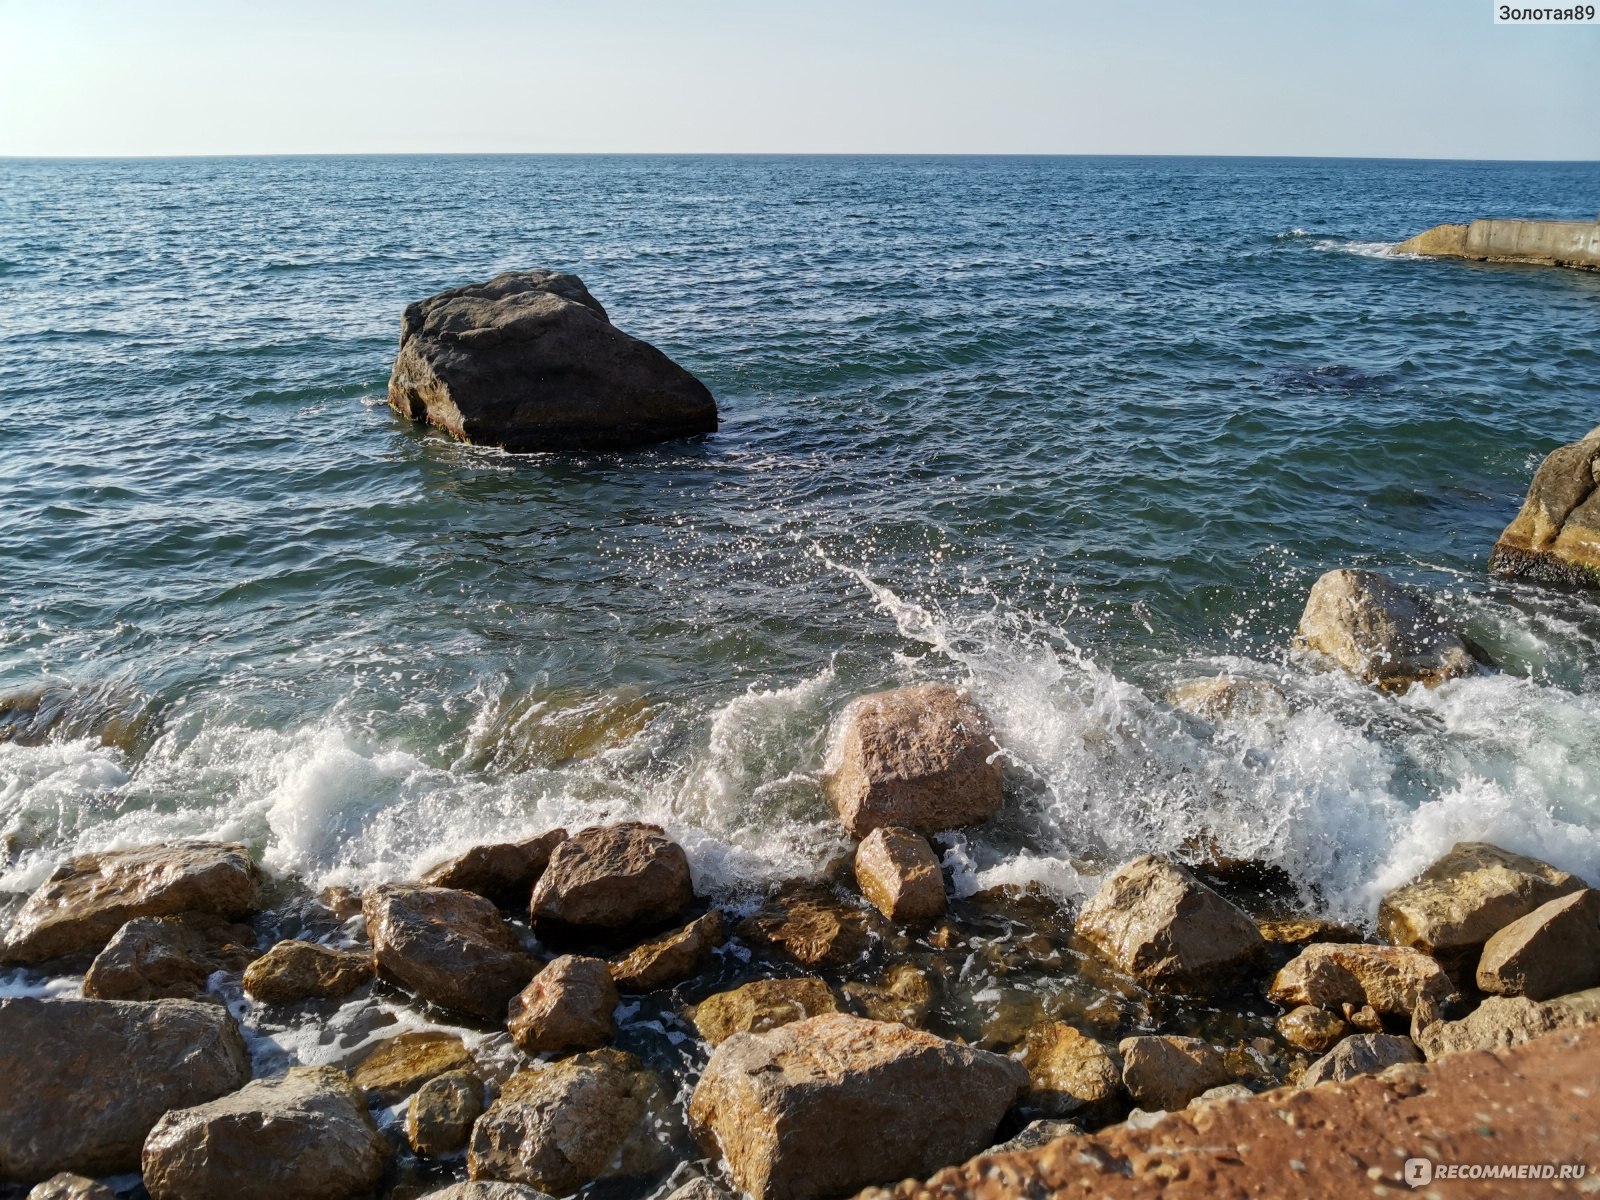 АР Крым, Алупка - «Отдых в Алупке 2021. Пляжи, Жилье, Экскурсии, Кафе, Цены. Покажу что происходит с морем после сильных ливней »